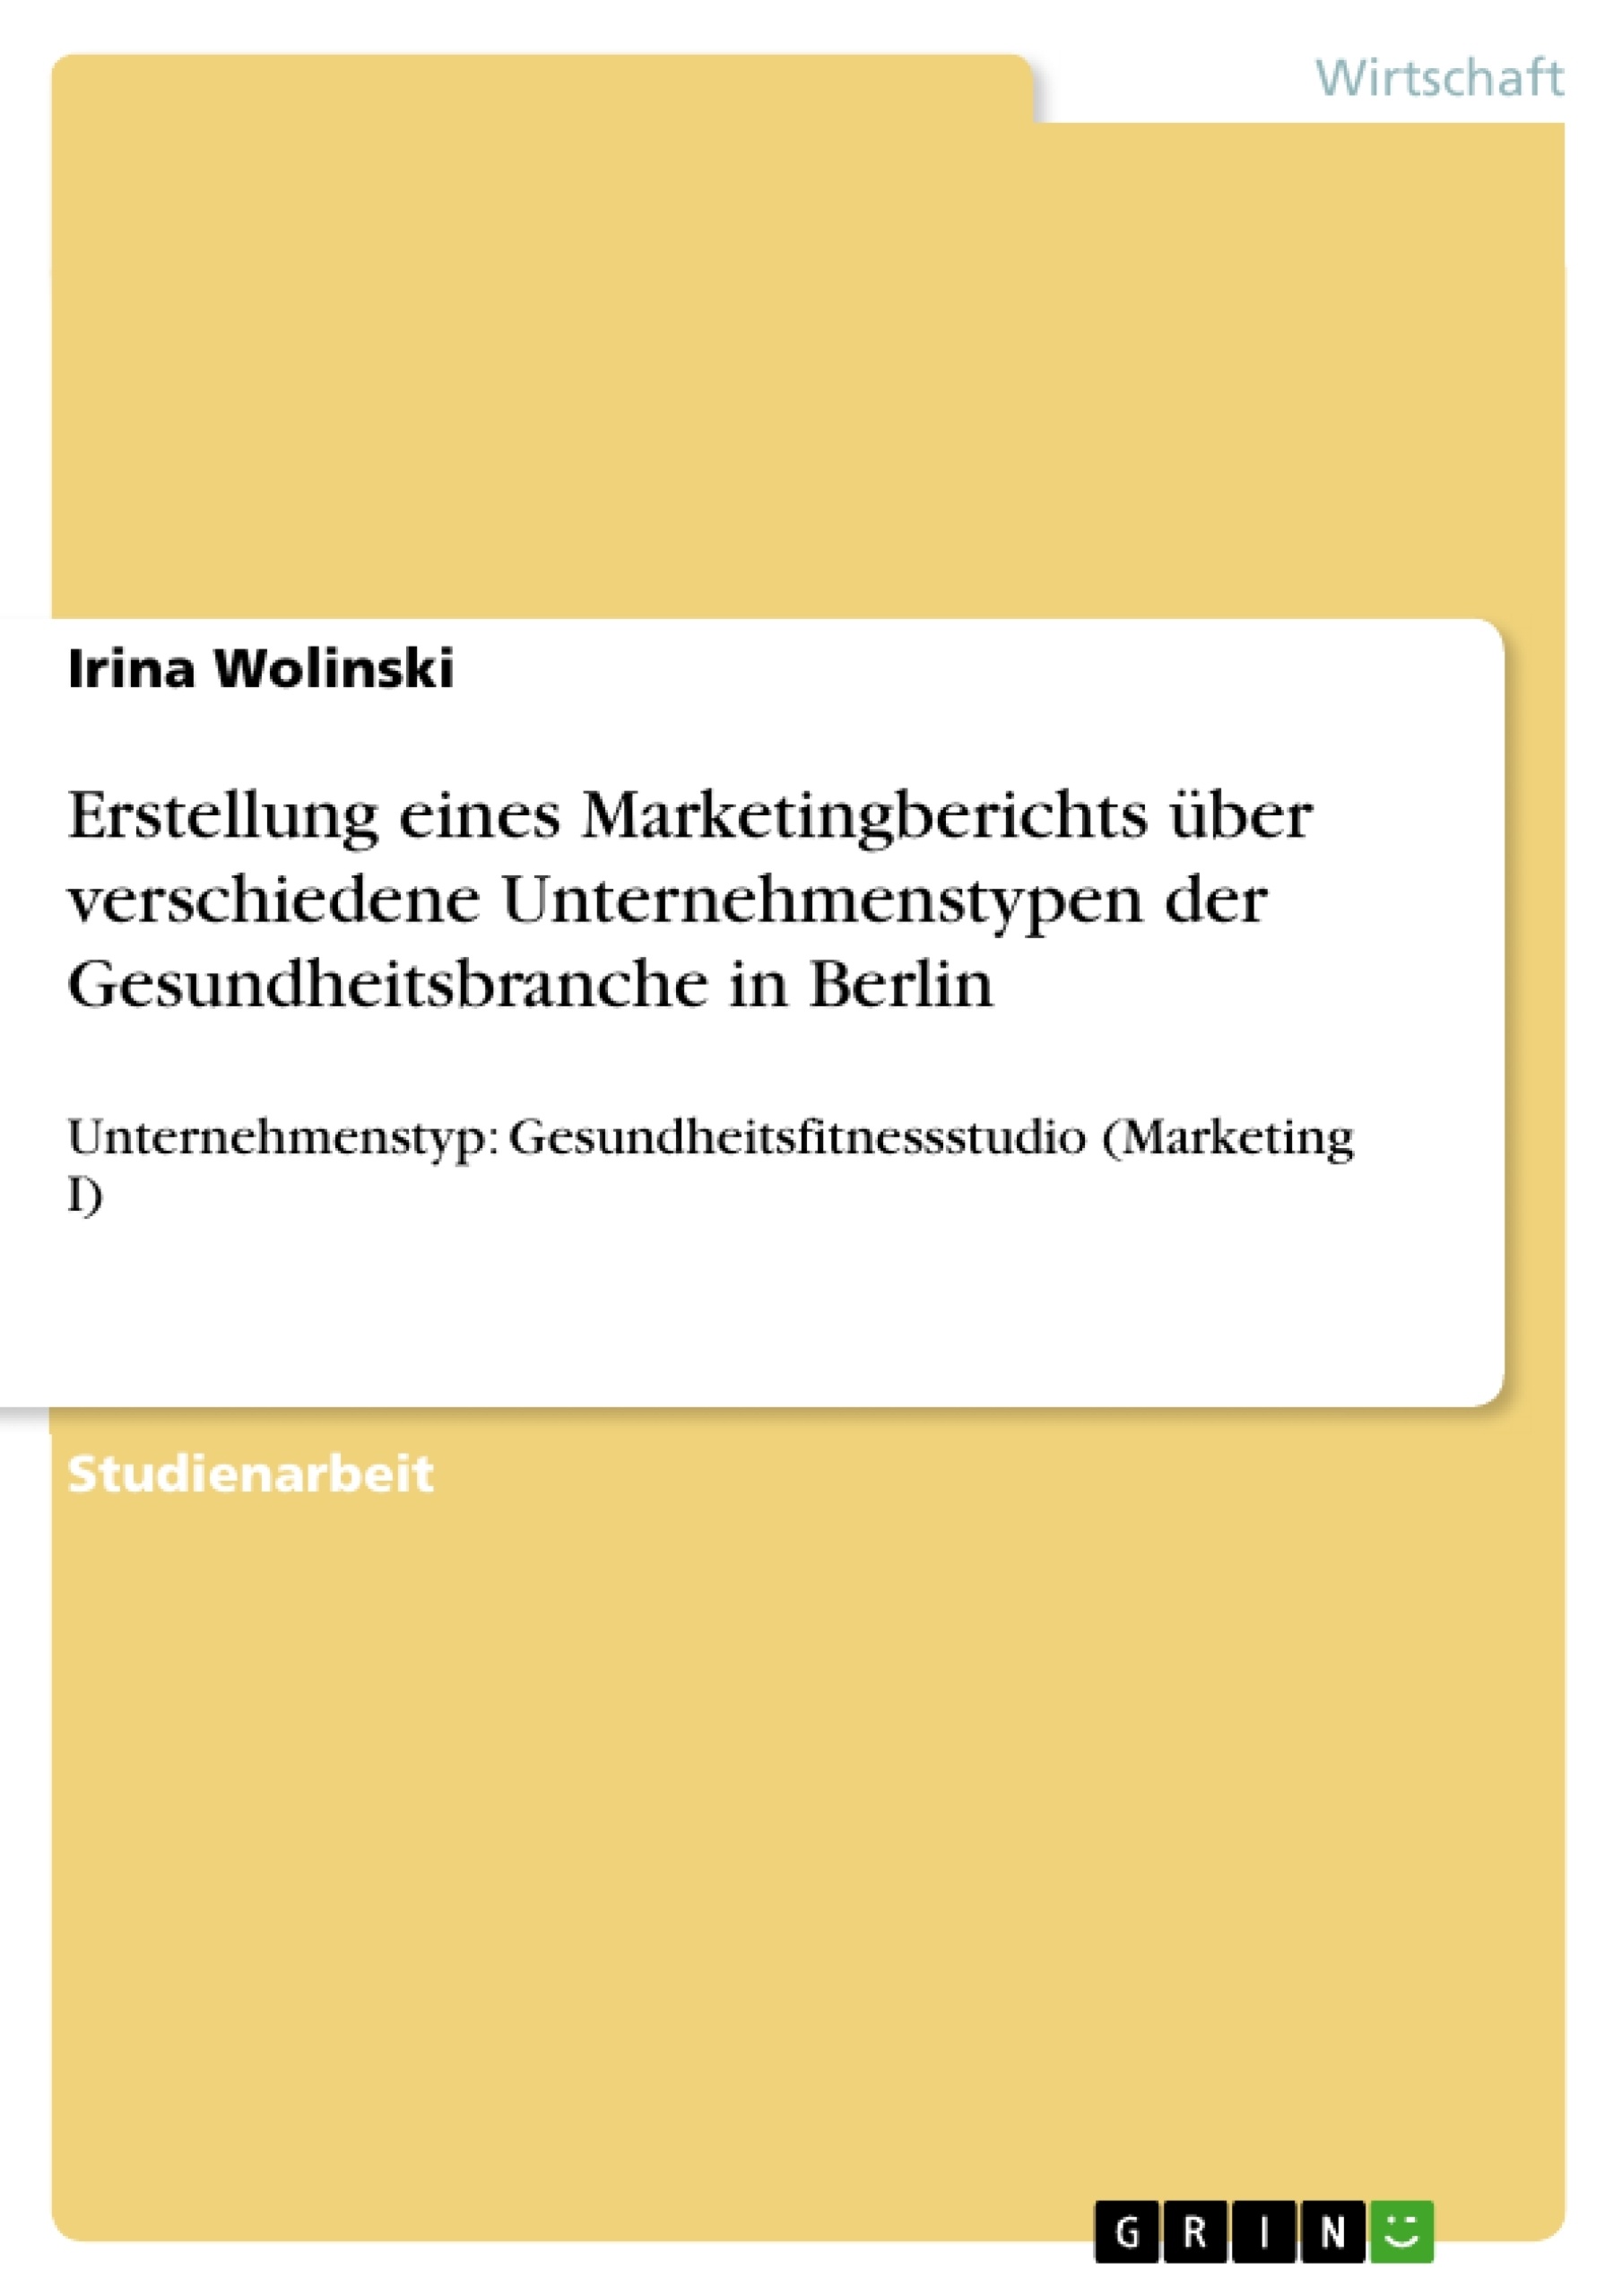 Título: Erstellung eines Marketingberichts über verschiedene Unternehmenstypen der Gesundheitsbranche in Berlin